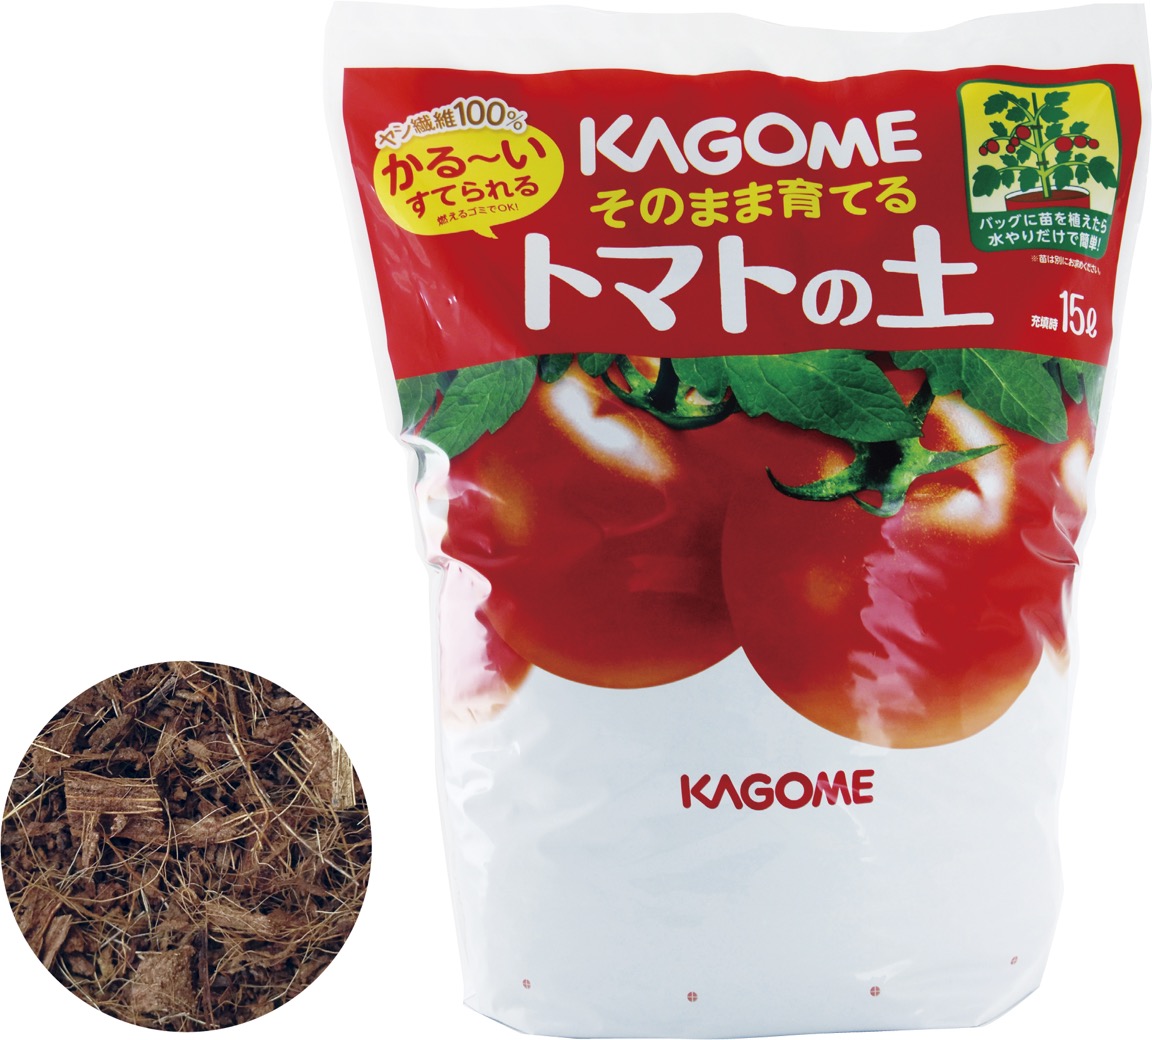 プロトリーフ】カゴメ社との共同開発 『KAGOME そのまま育てるトマトの